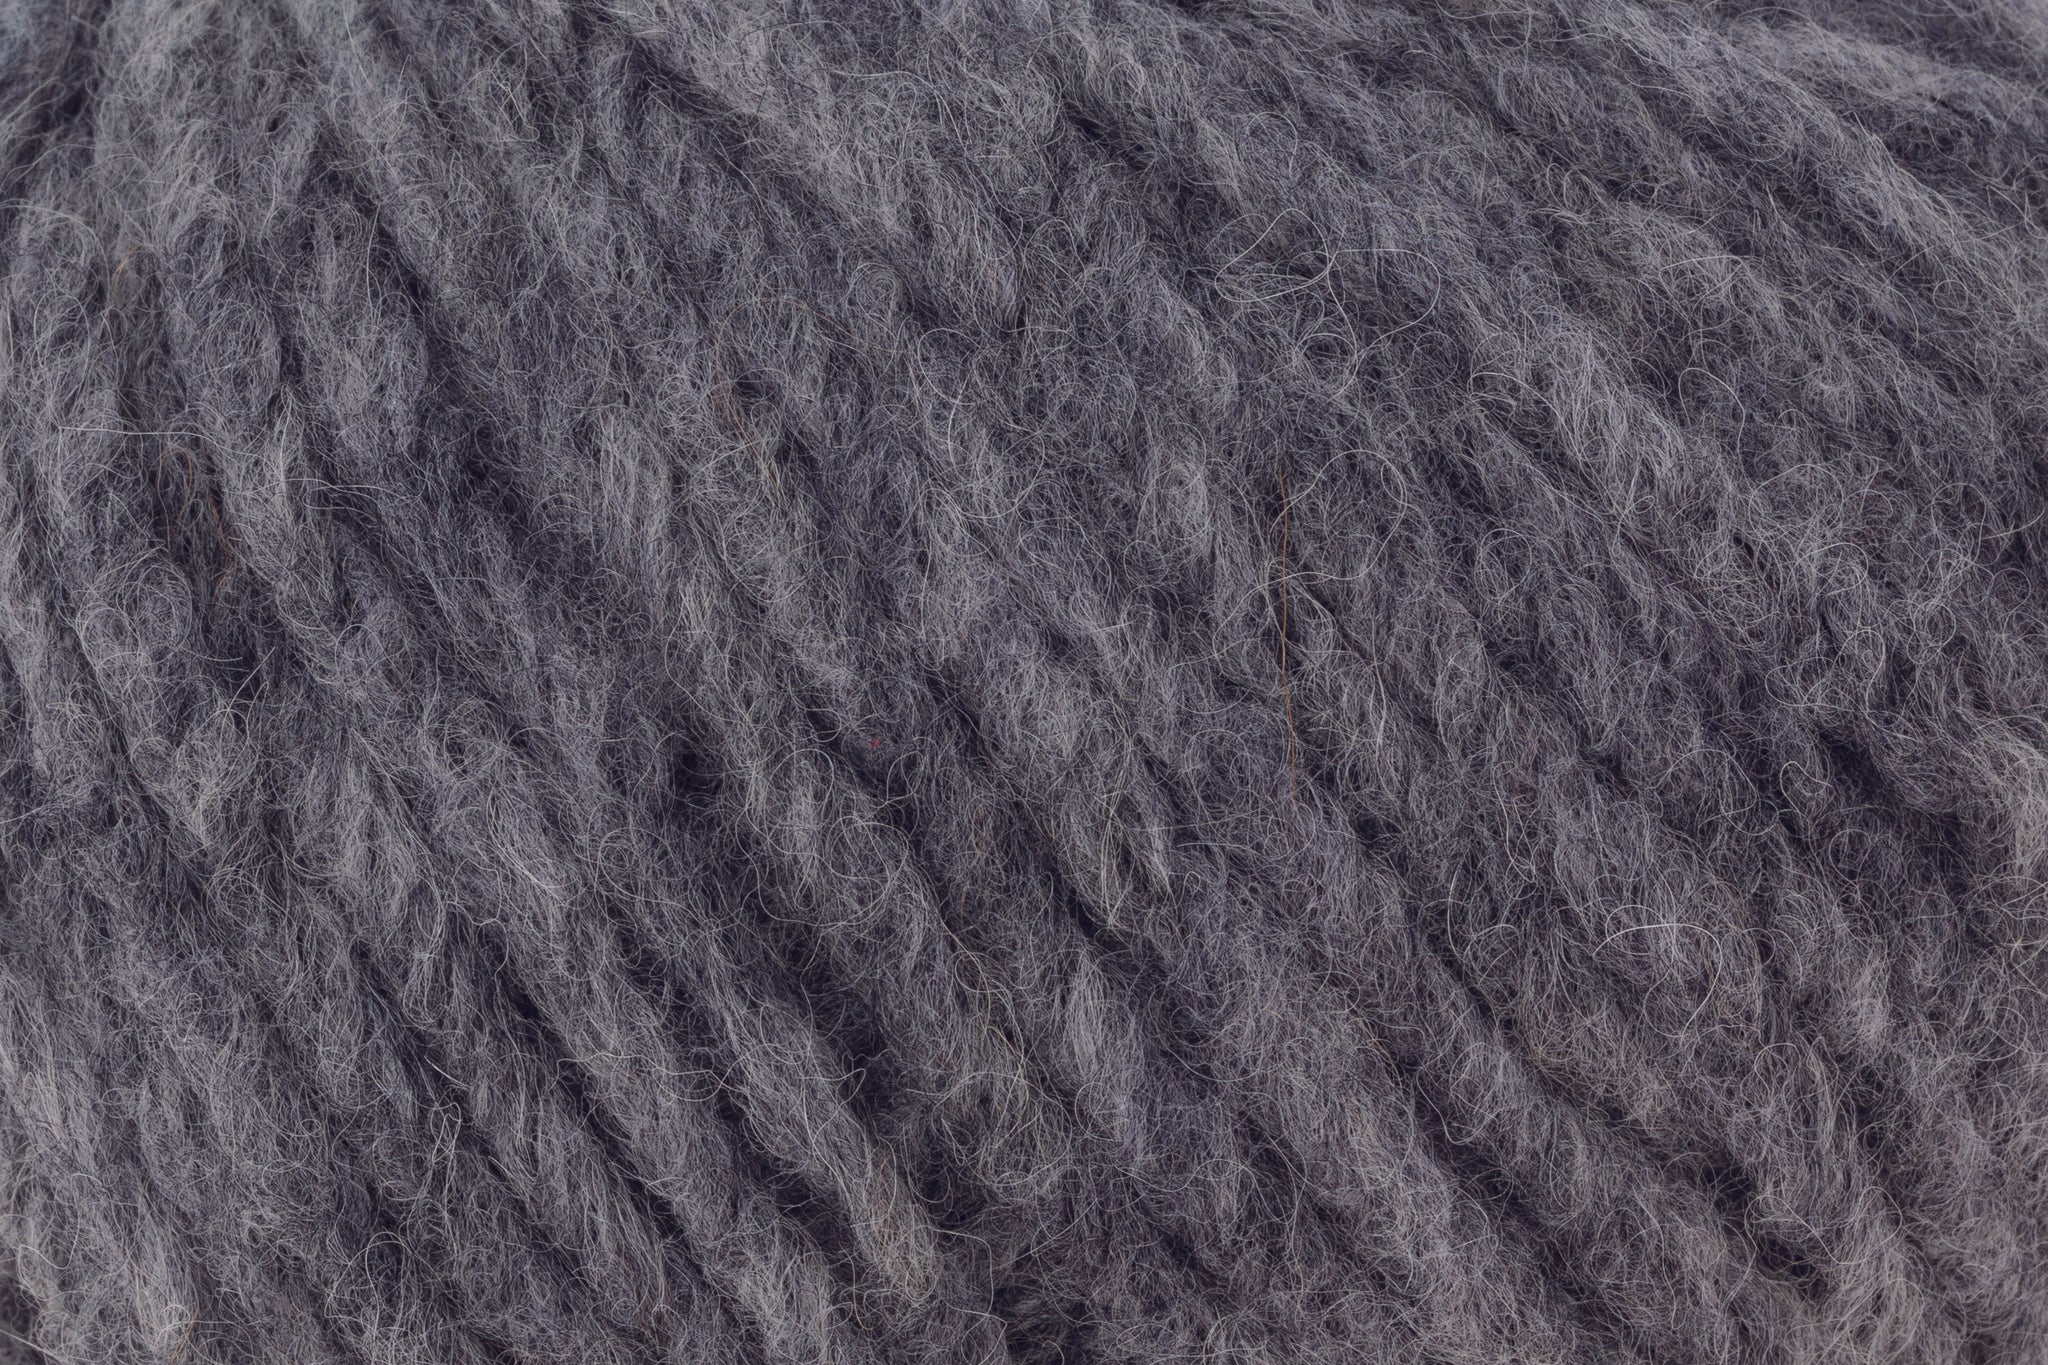 Rowan Brushed Fleece in Crag-253